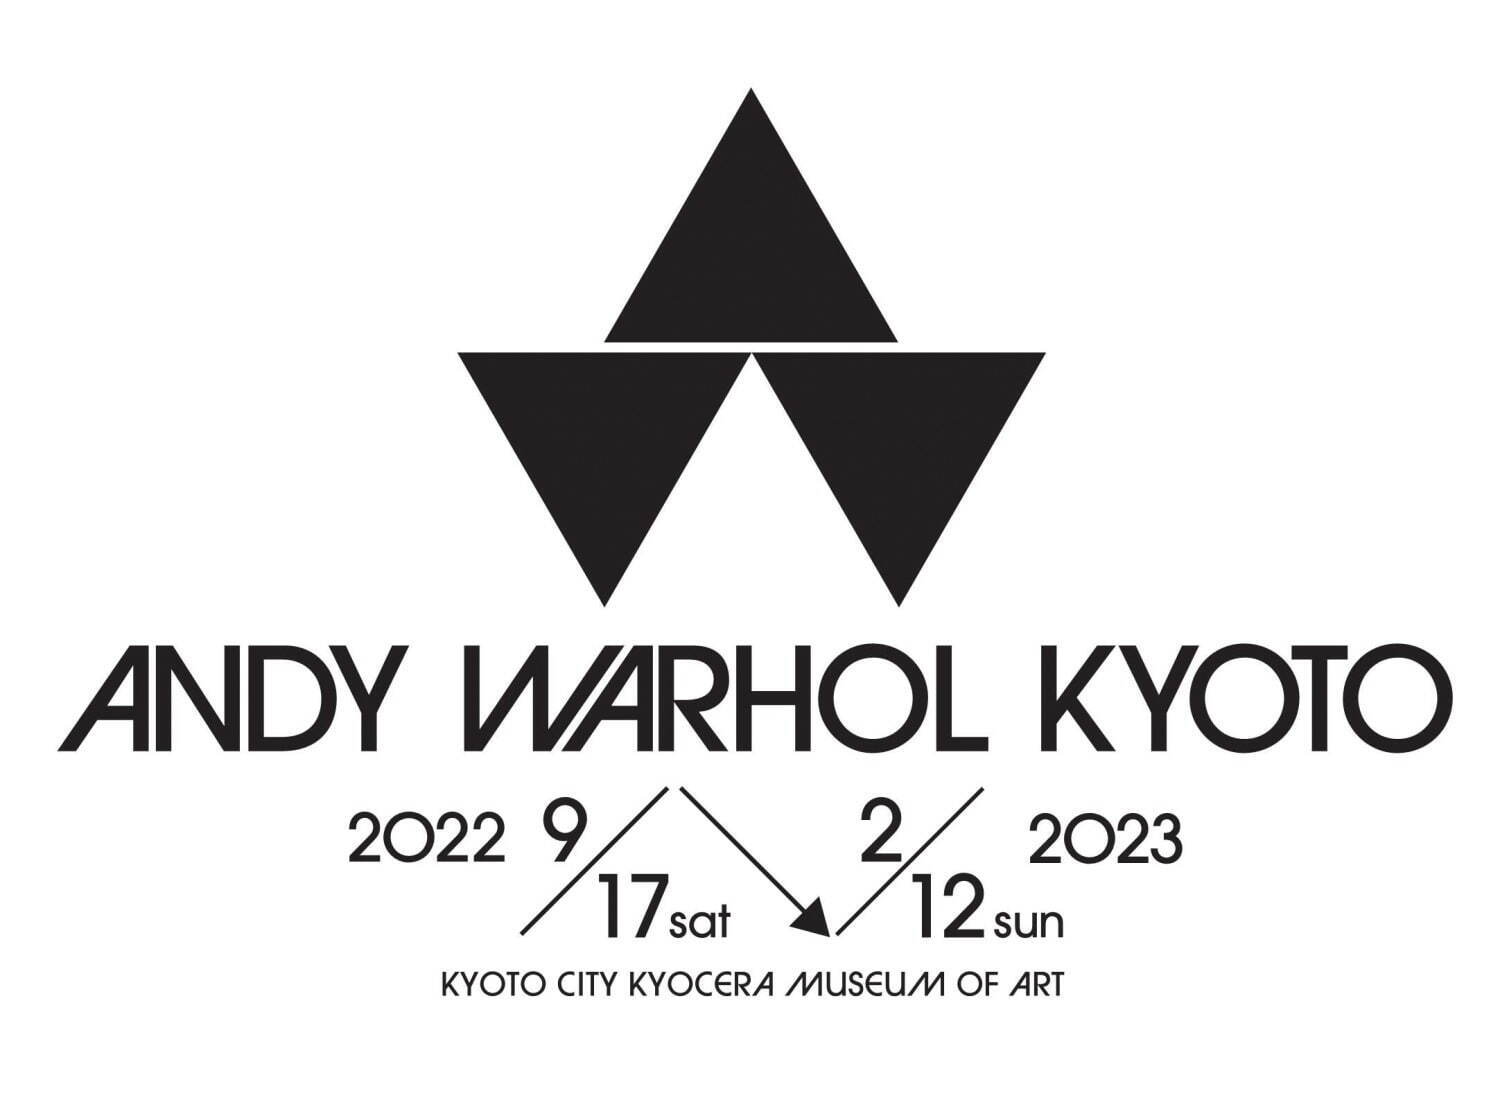 ポップ・アートの旗手”アンディ・ウォーホルの大回顧展、京都市京セラ